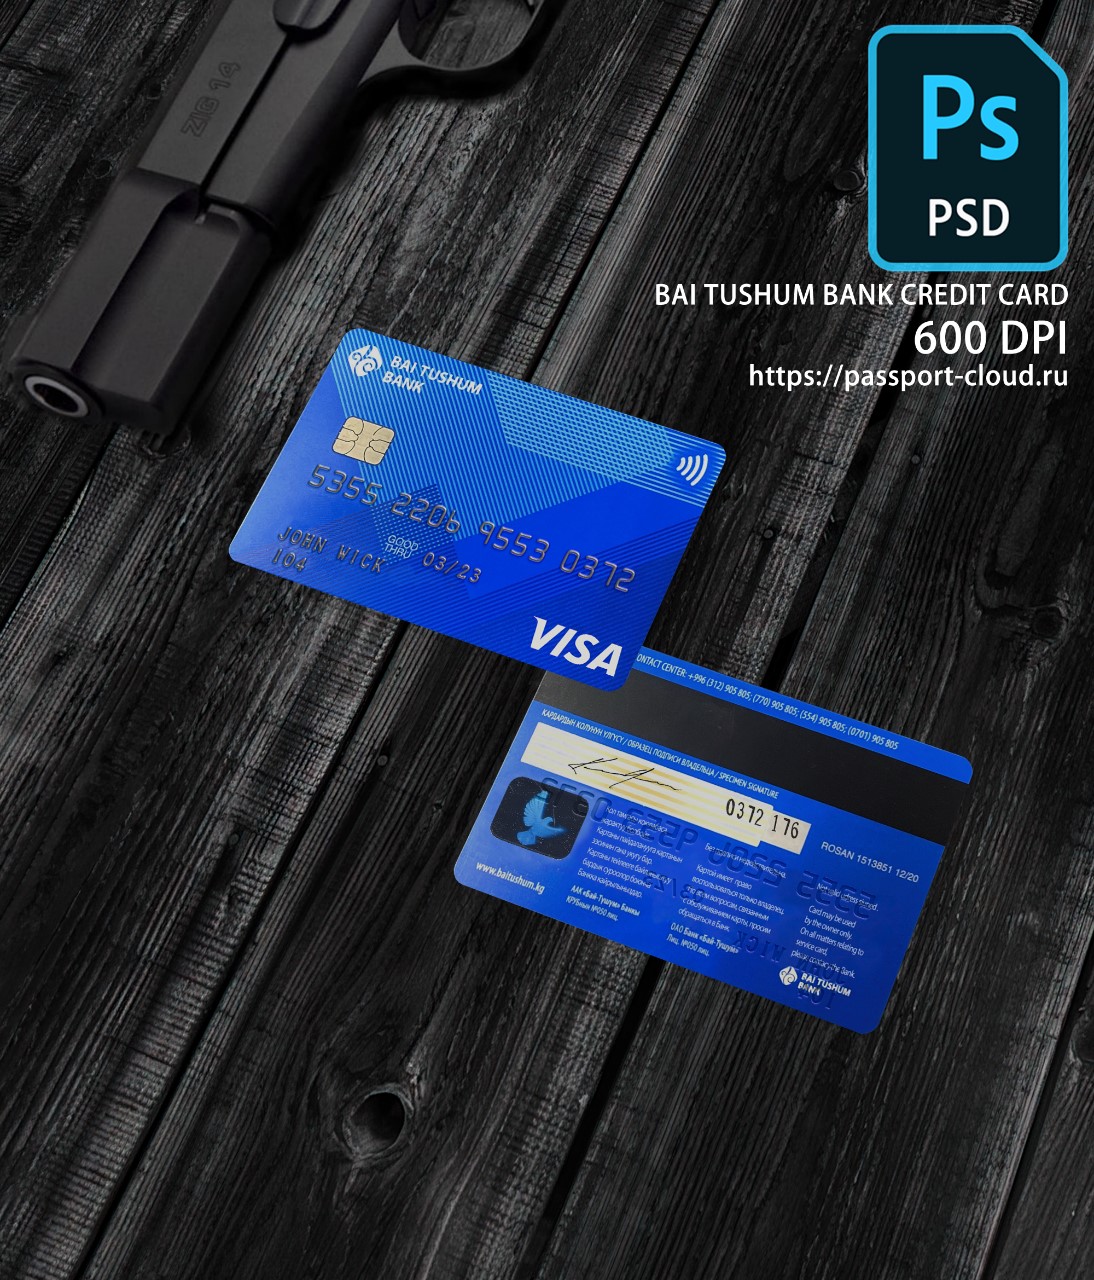 Bai Tushum Bank Credit Card PSD1